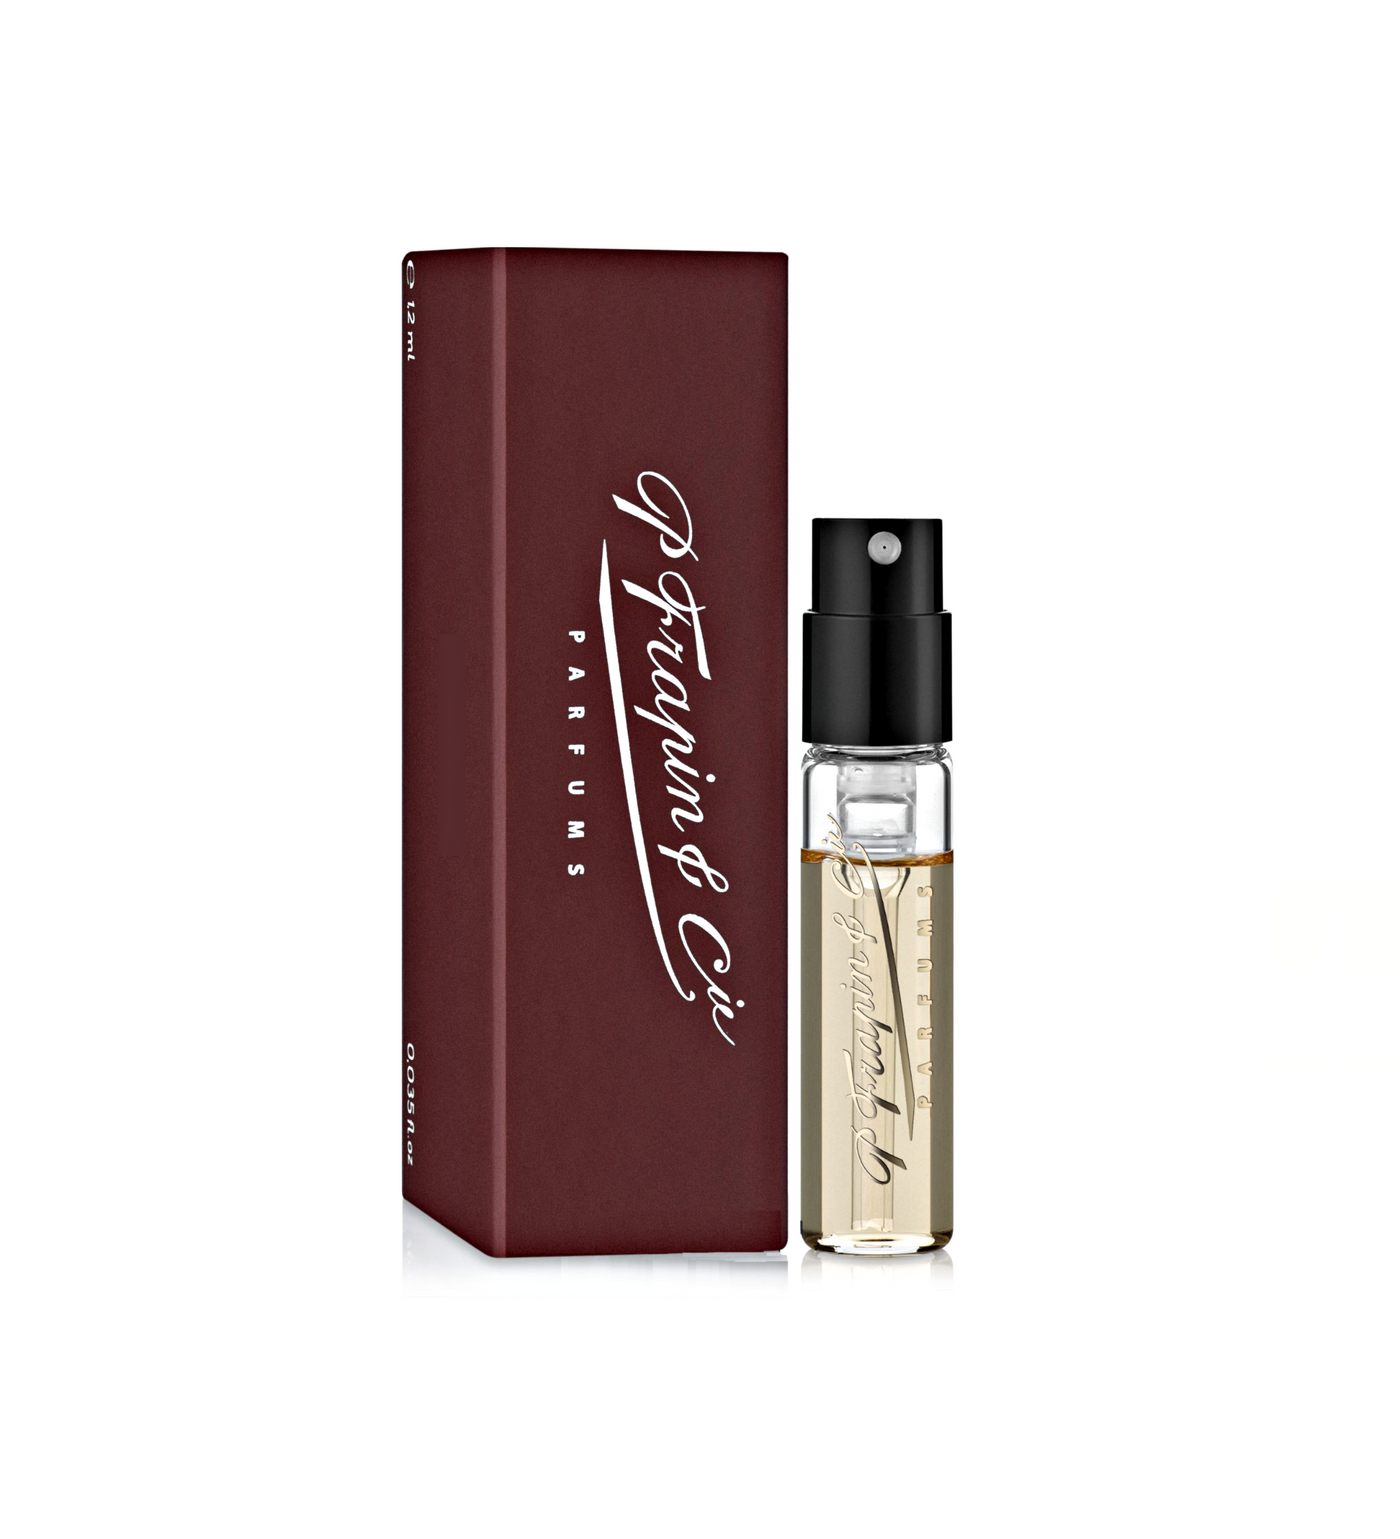 Speakeasy - P.Frapin & Cie - Eau de Parfum Duftprøve 2ml